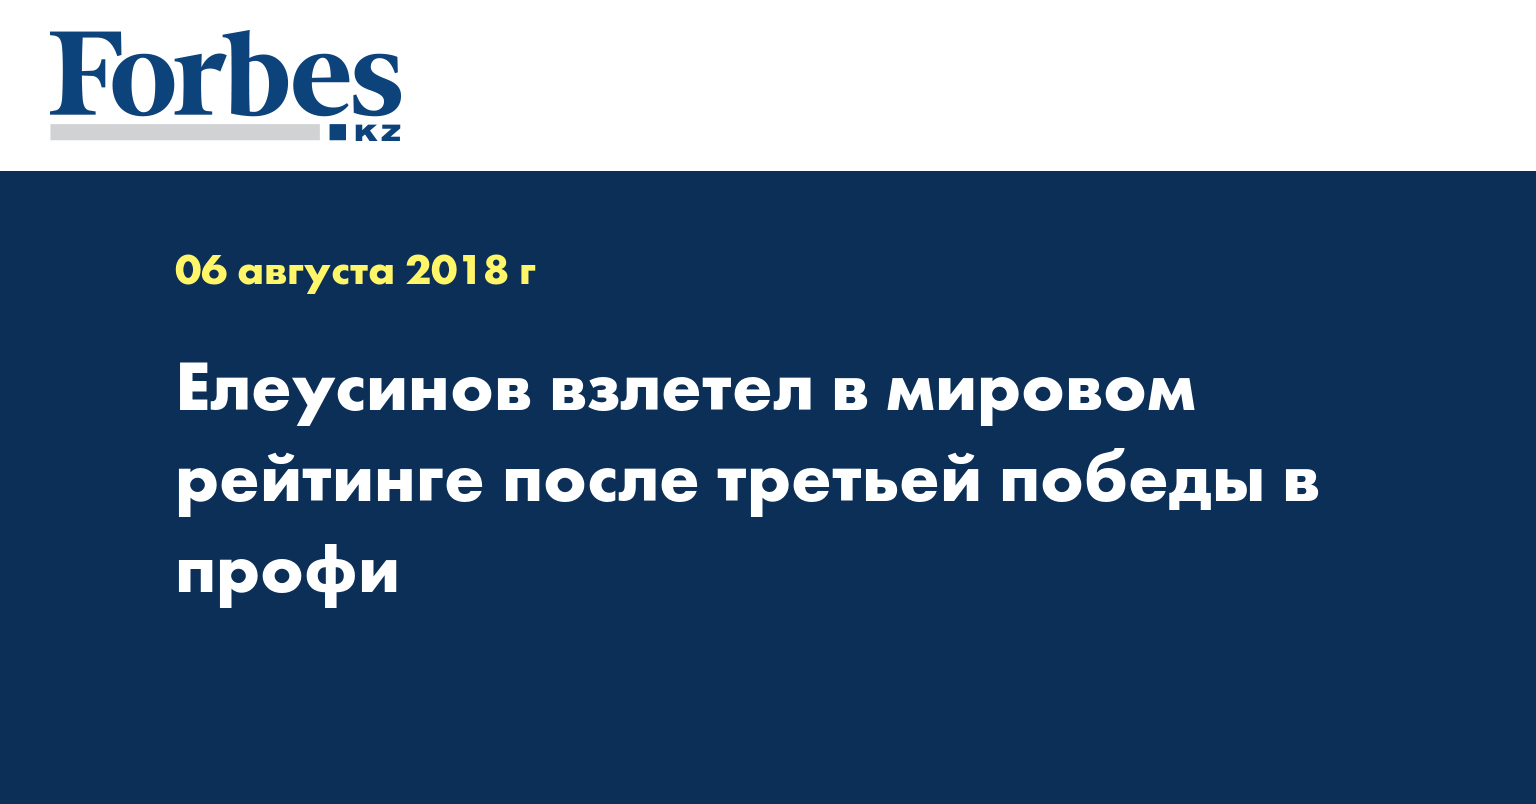 Елеусинов взлетел в мировом рейтинге после третьей победы 